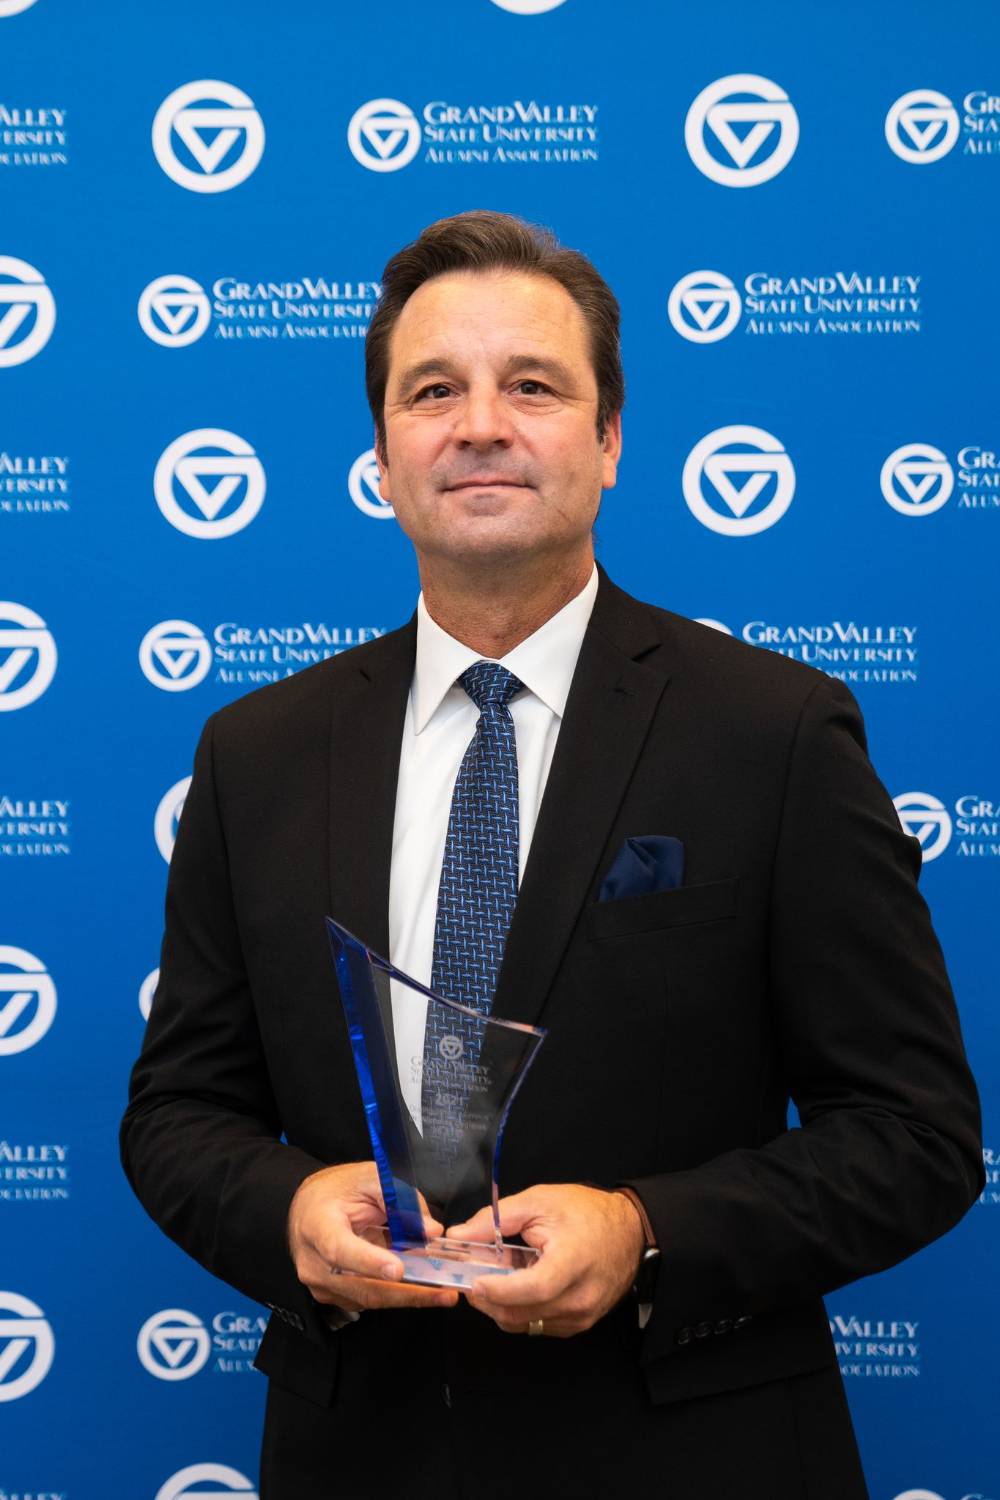 Dr. Ceglarek with award